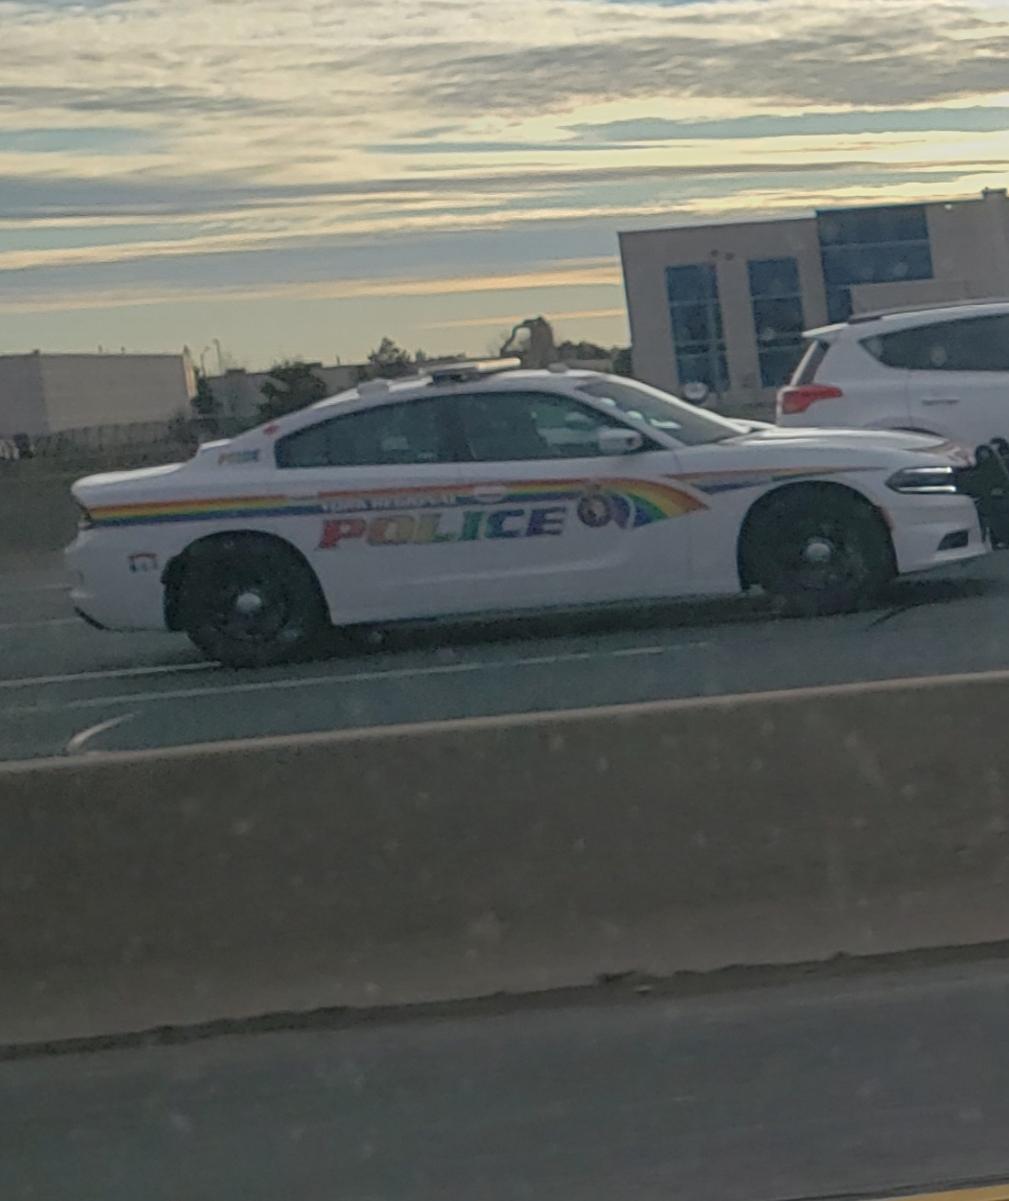 Pride+Police+Car+in+Canada